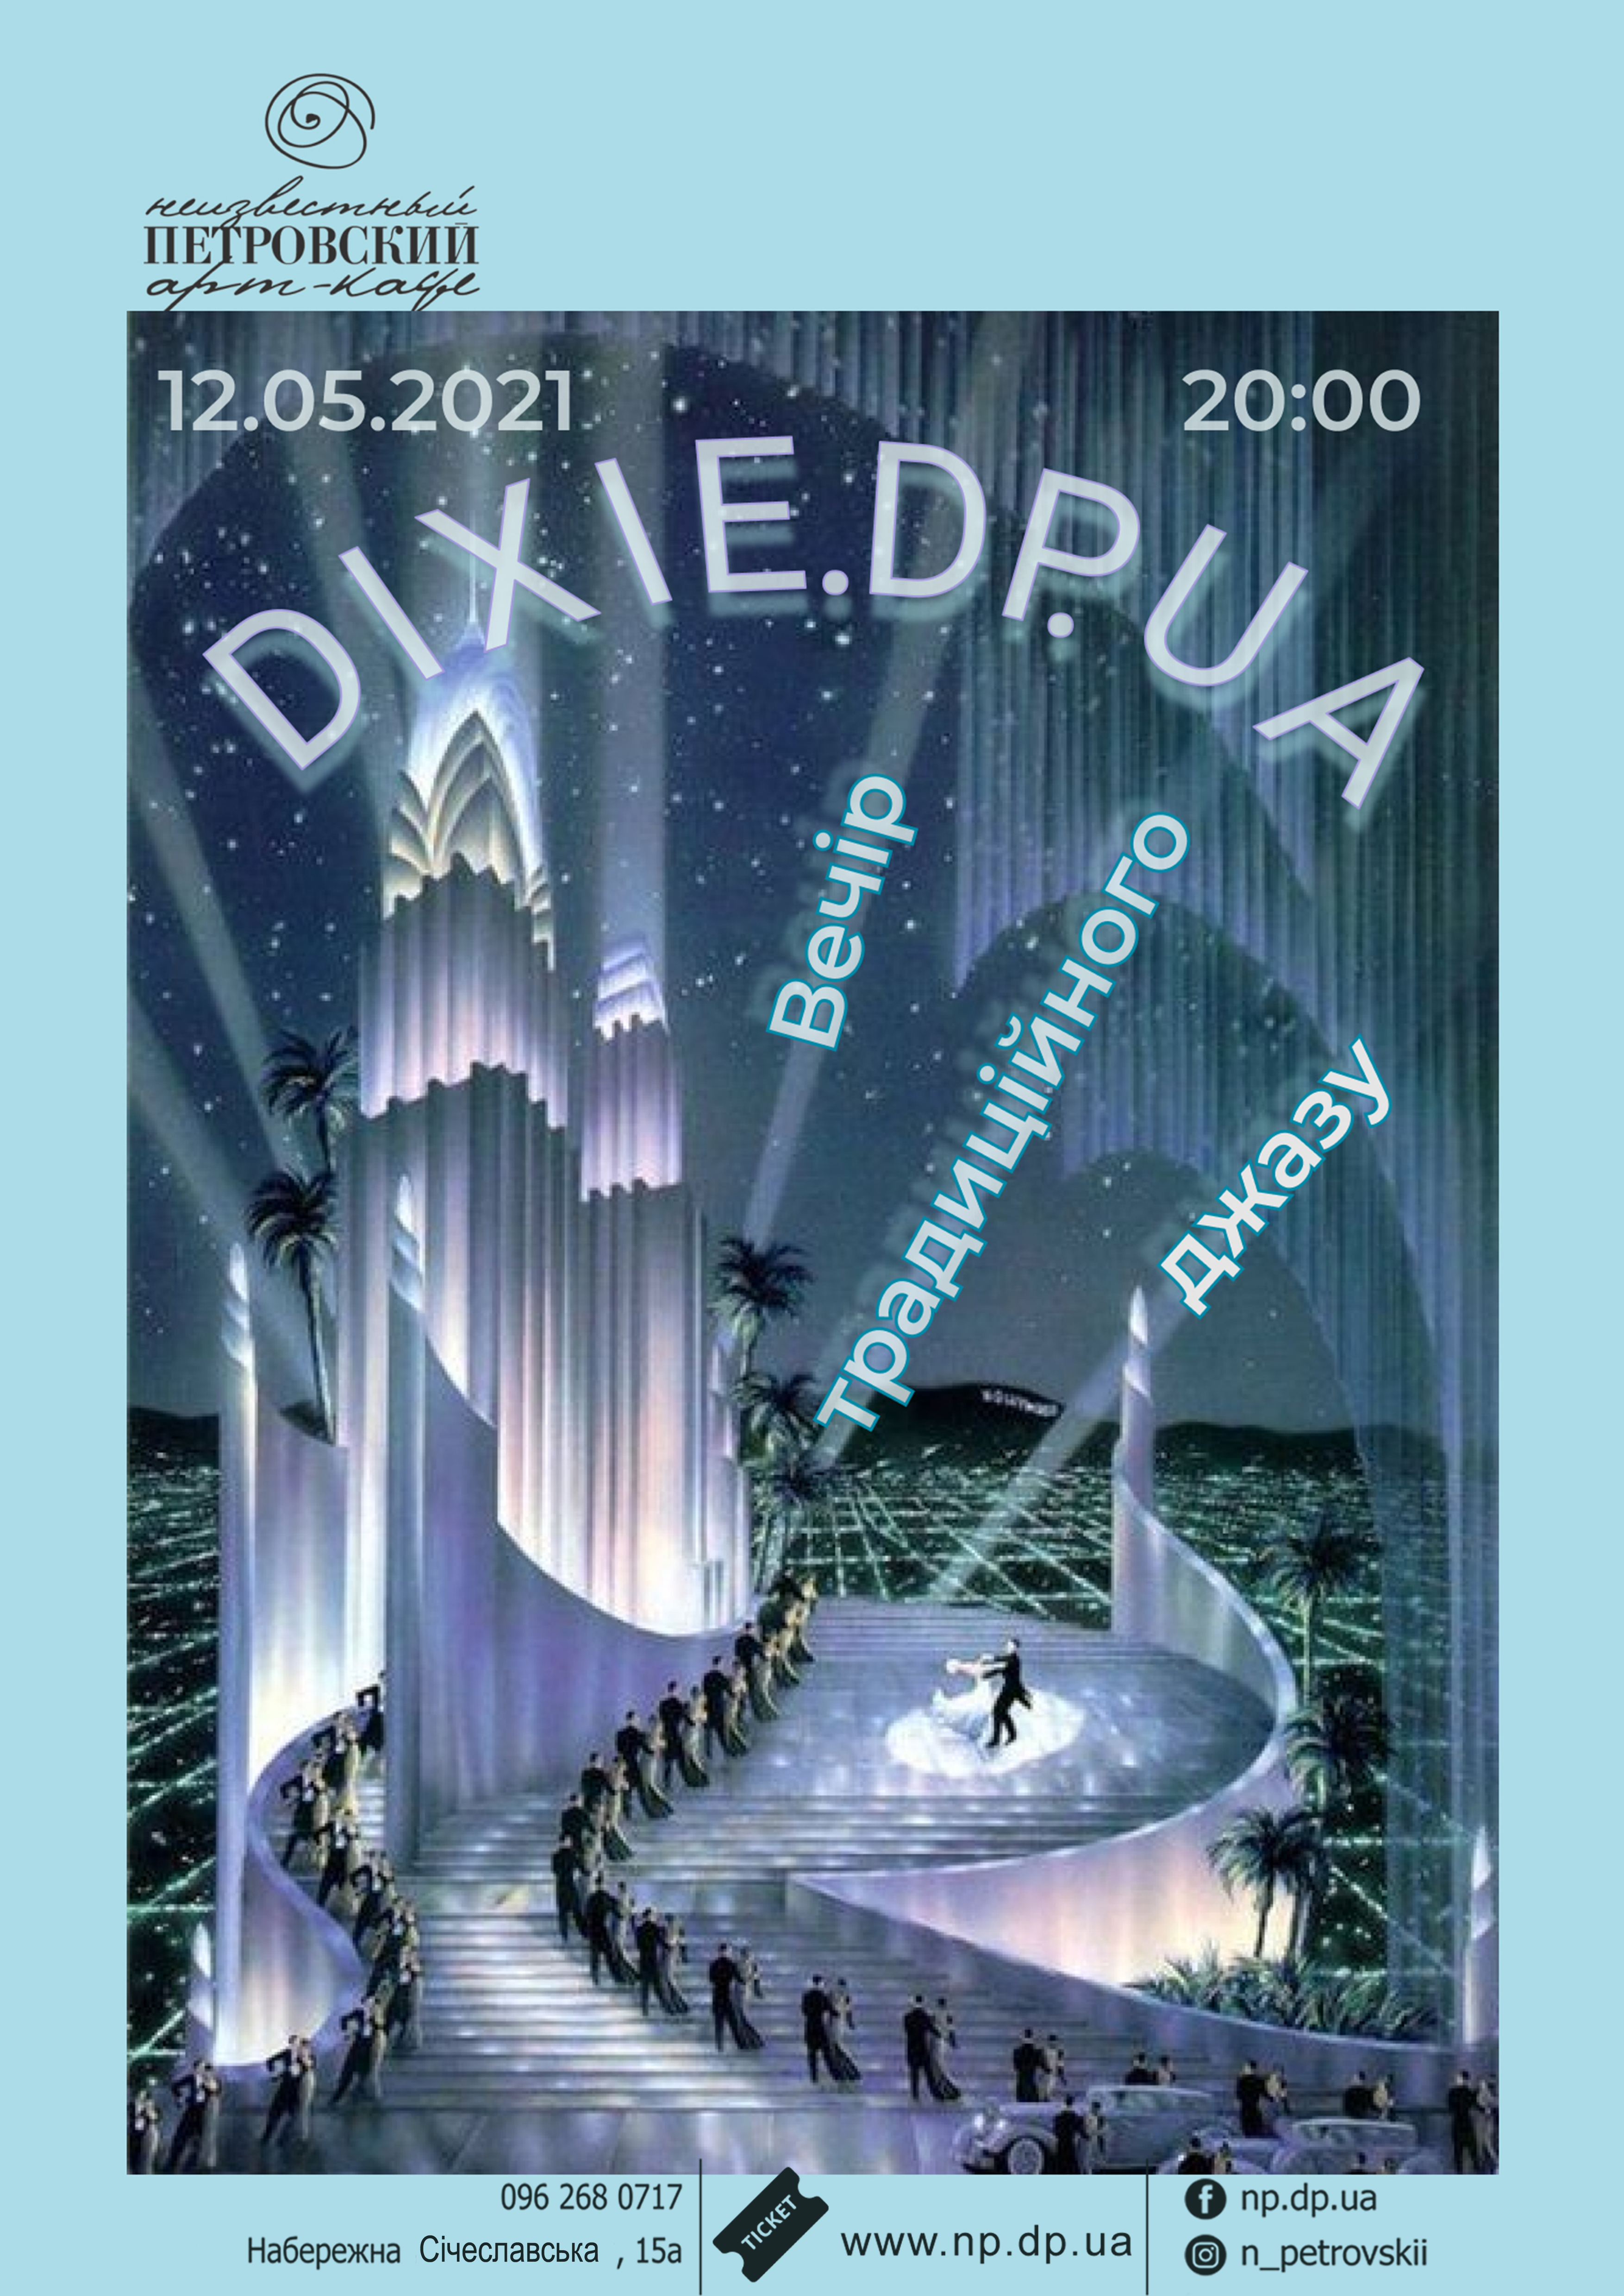 Концерт DIXIEDP.UA Днепр, 12.05.2021, купить билеты. Афиша Днепра